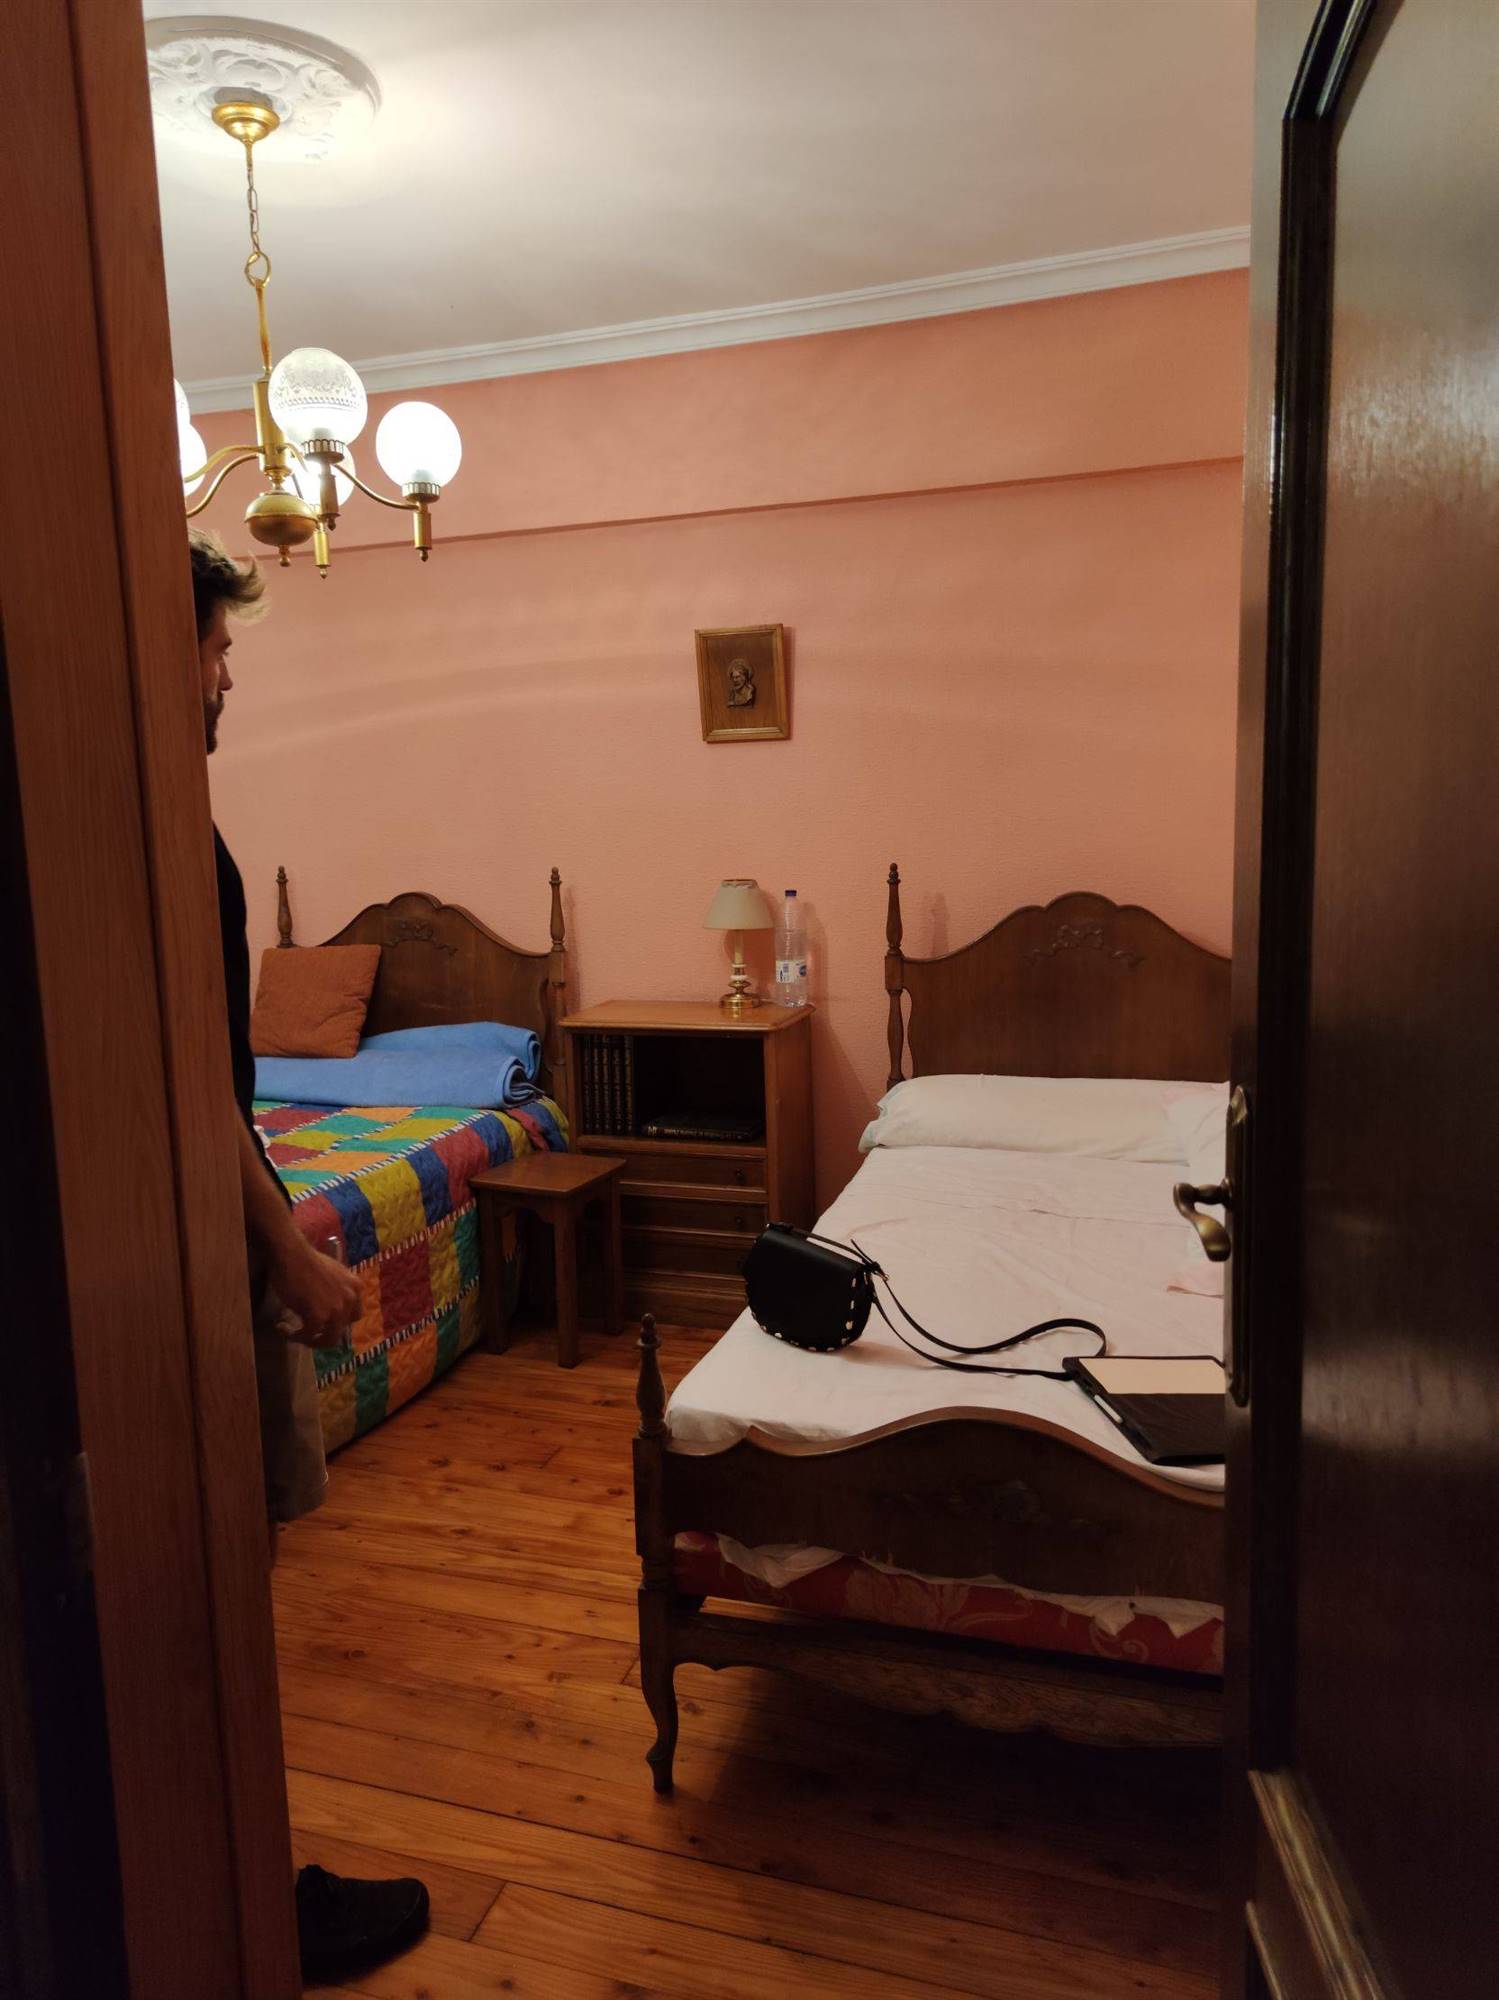 Dormitorio antes de la reforma. 